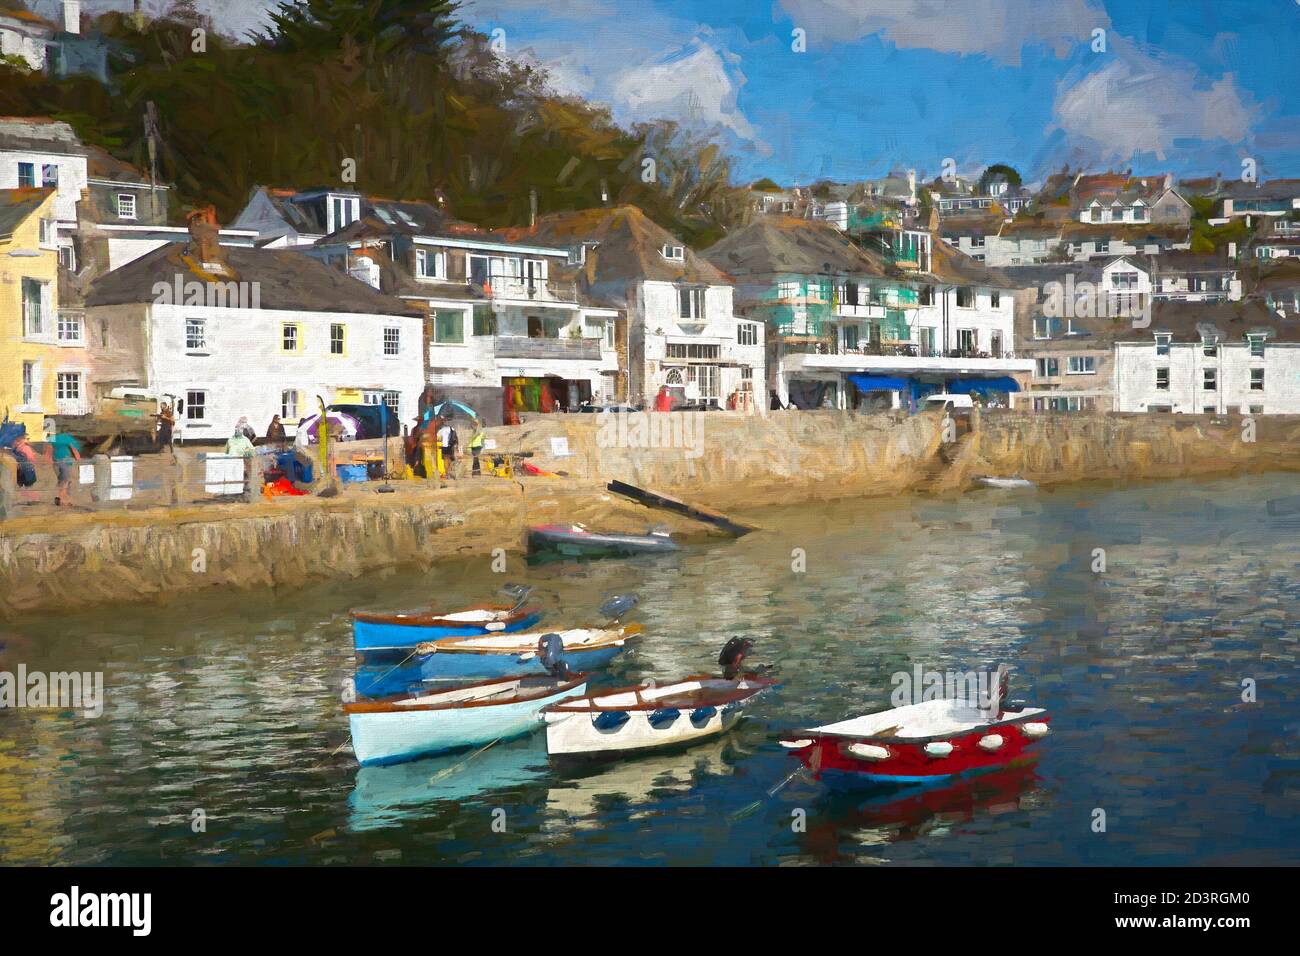 St Mawes habour Cornwall Roseland Peninsula England UK illustration like oil painting Stock Photo